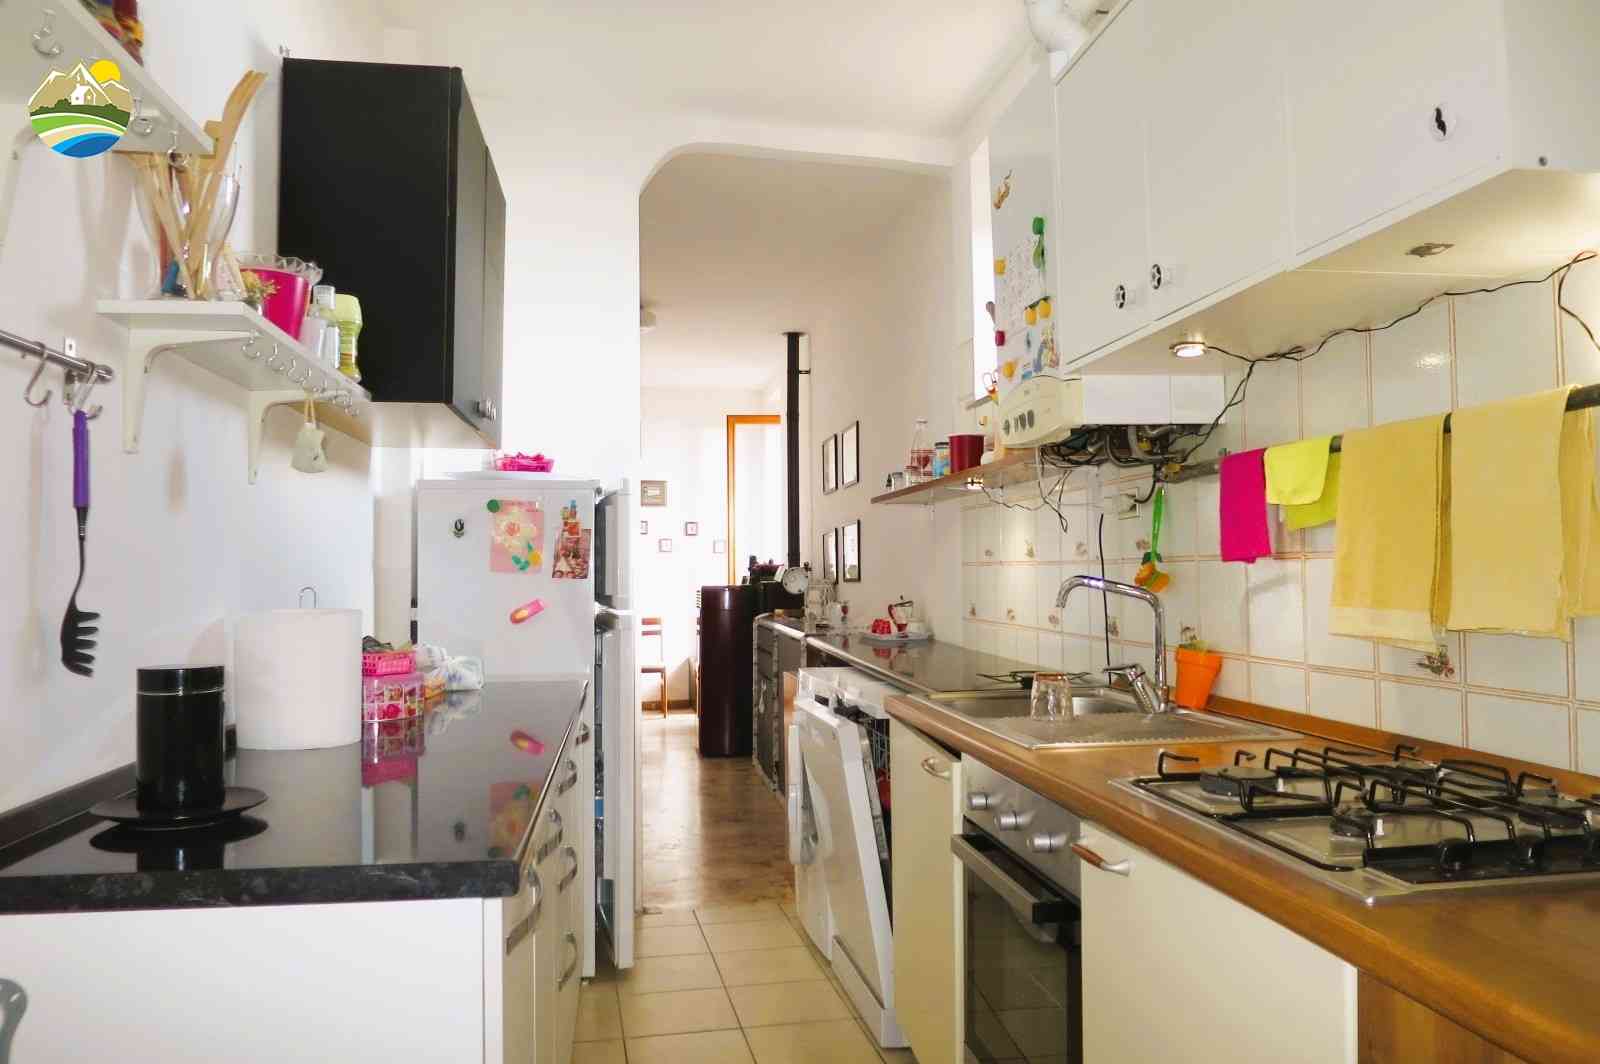 Casa in paese Casa in paese in vendita Pineto (TE), Appartamento del Corso - Pineto - EUR 116.810 580